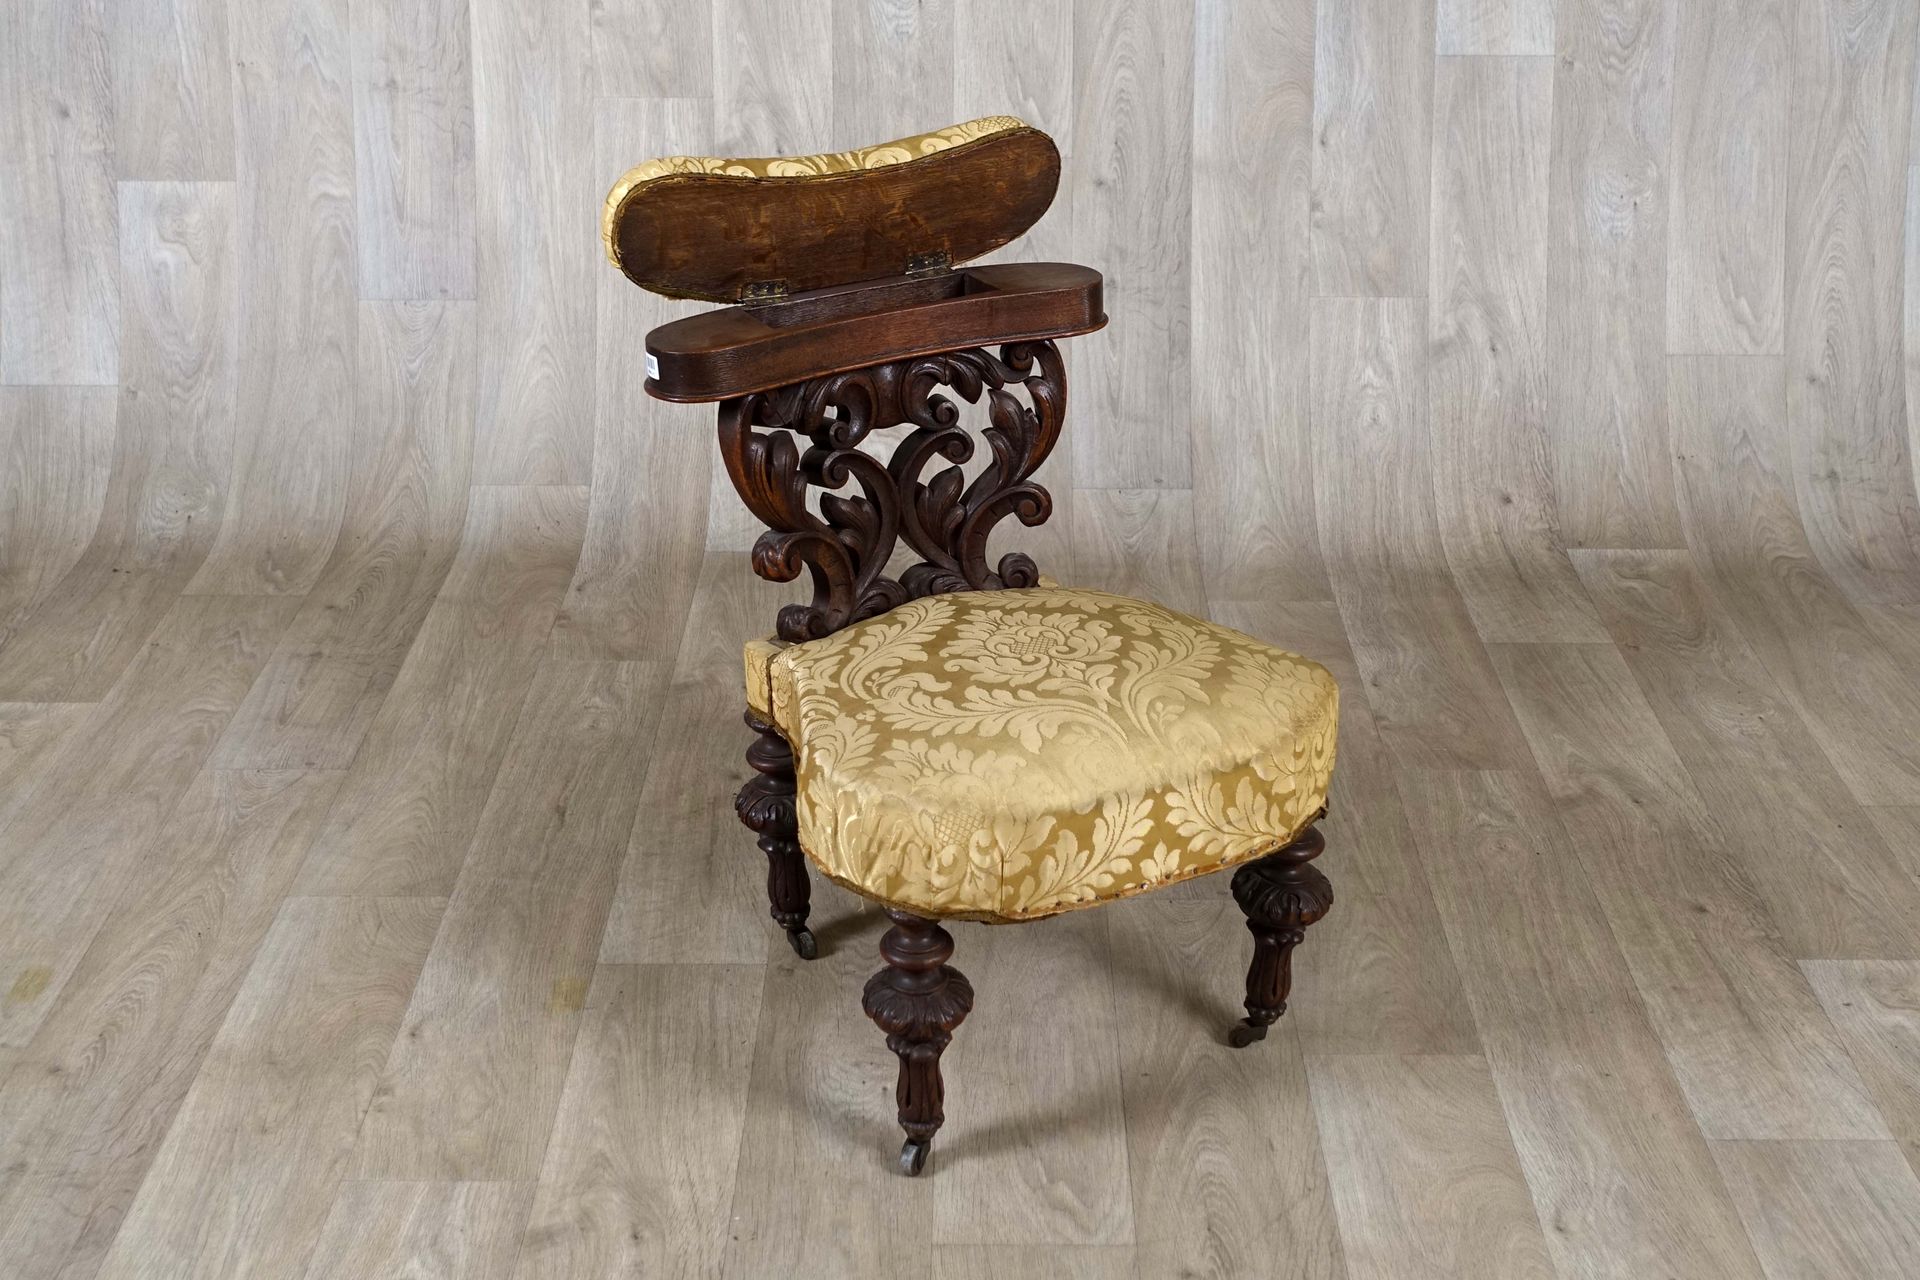 Chaise de fumeur. 带有旋转扶手的靠背。支腿安装在脚轮上。橡木，有古色古香。19世纪末的作品。